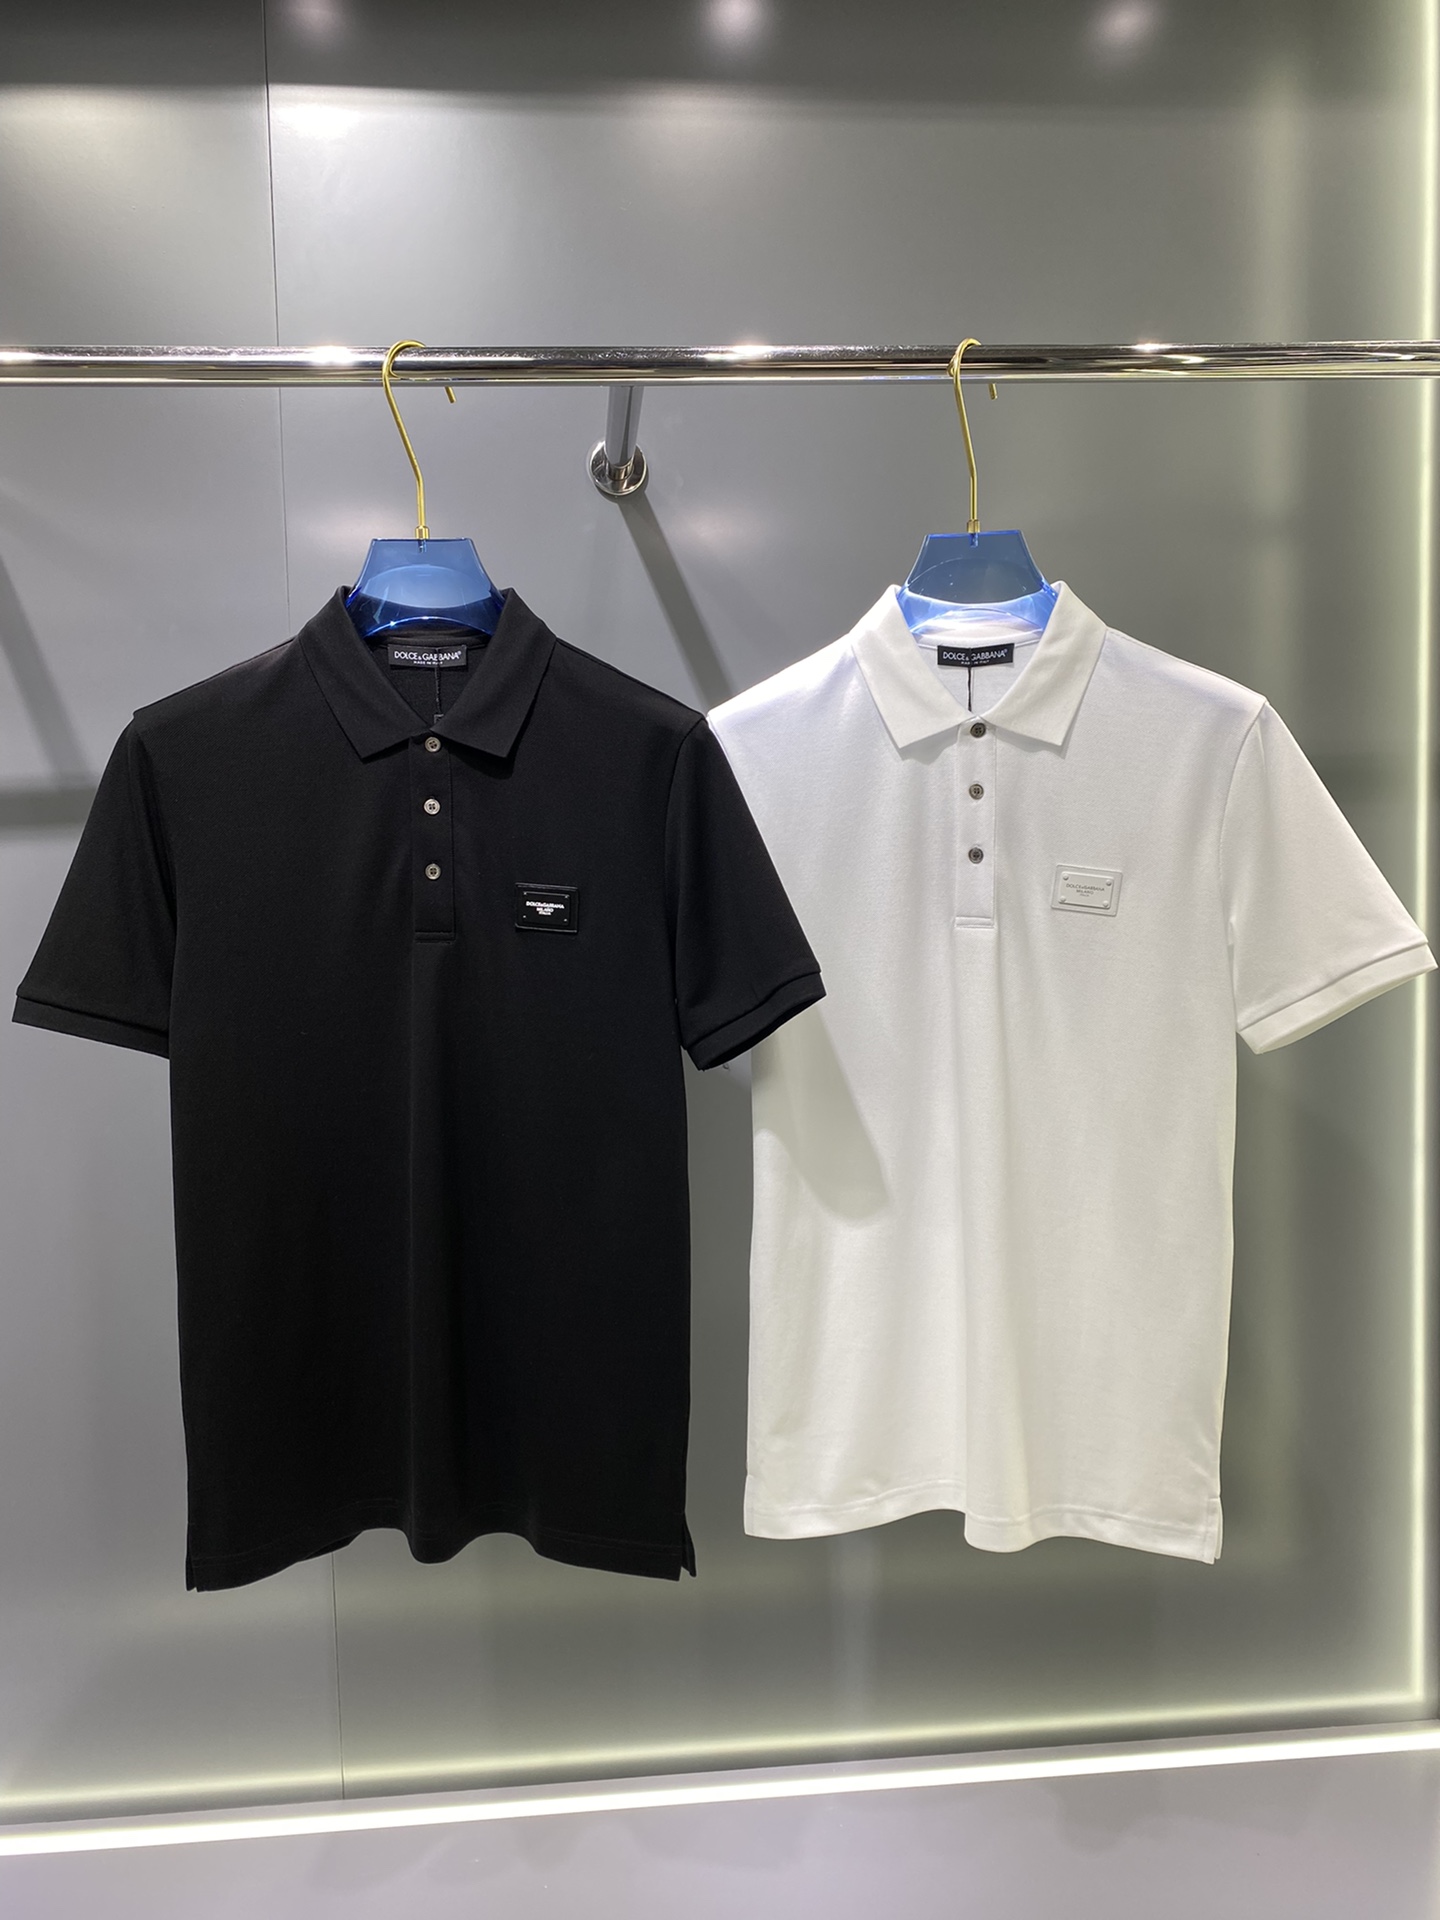 Pzldbd 2024# DG夏季新款短袖T恤polo，客供定制珠地面料，简单时尚款，超级好看！简单大方的款式！满满的高级感，四季可穿。\n颜色：黑色 白色 \nsize：sbed-56